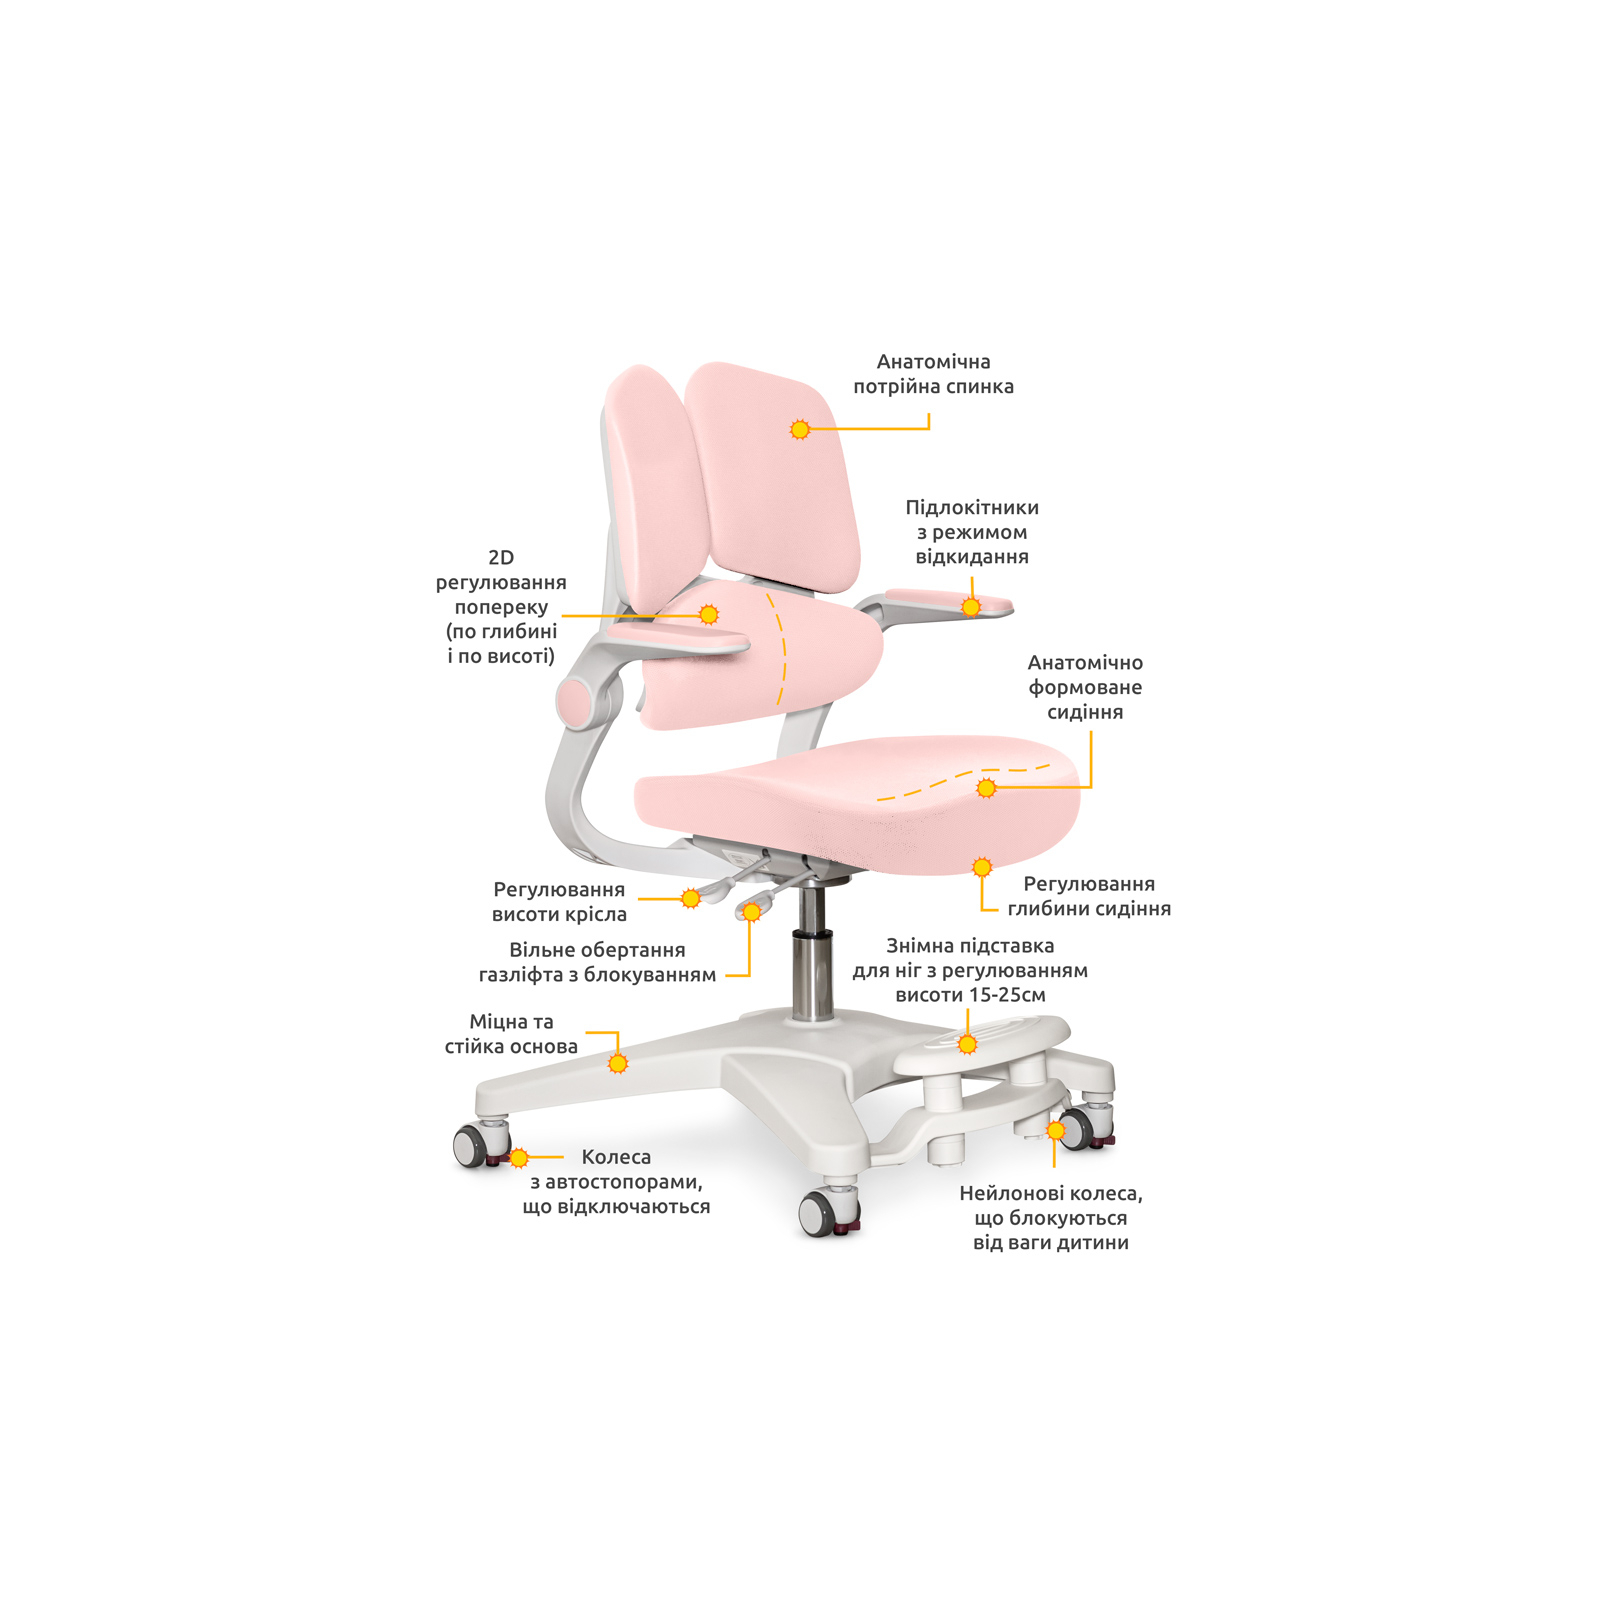 Детское кресло Mealux Trident Dark Pink (Y-617 DP) изображение 2